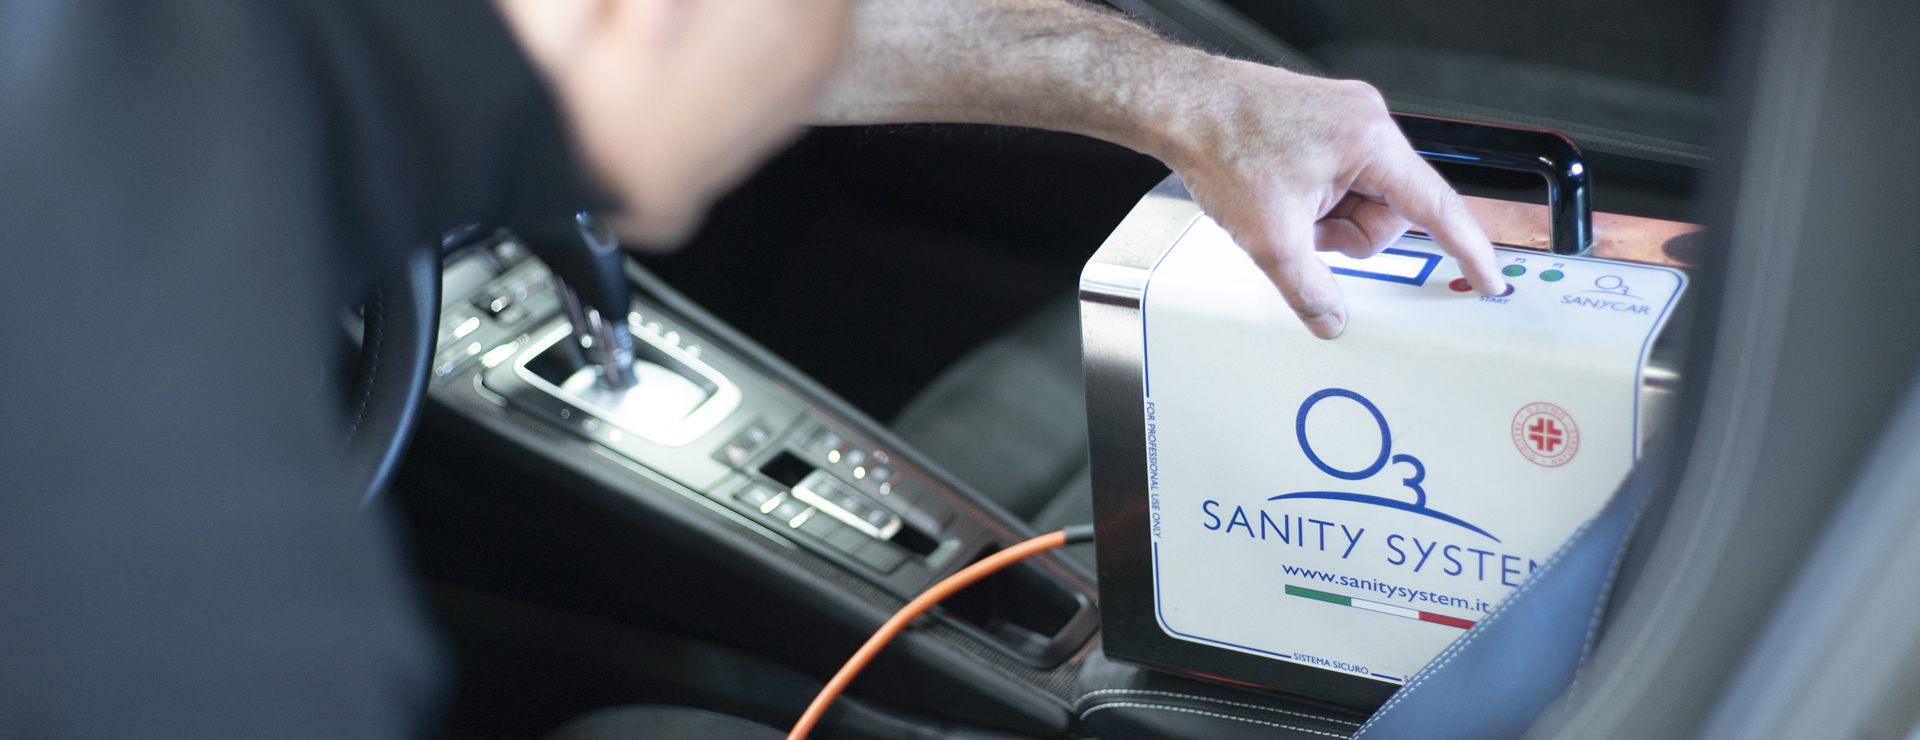 Addetto mette in funzione Sany Car all'interno di un auto